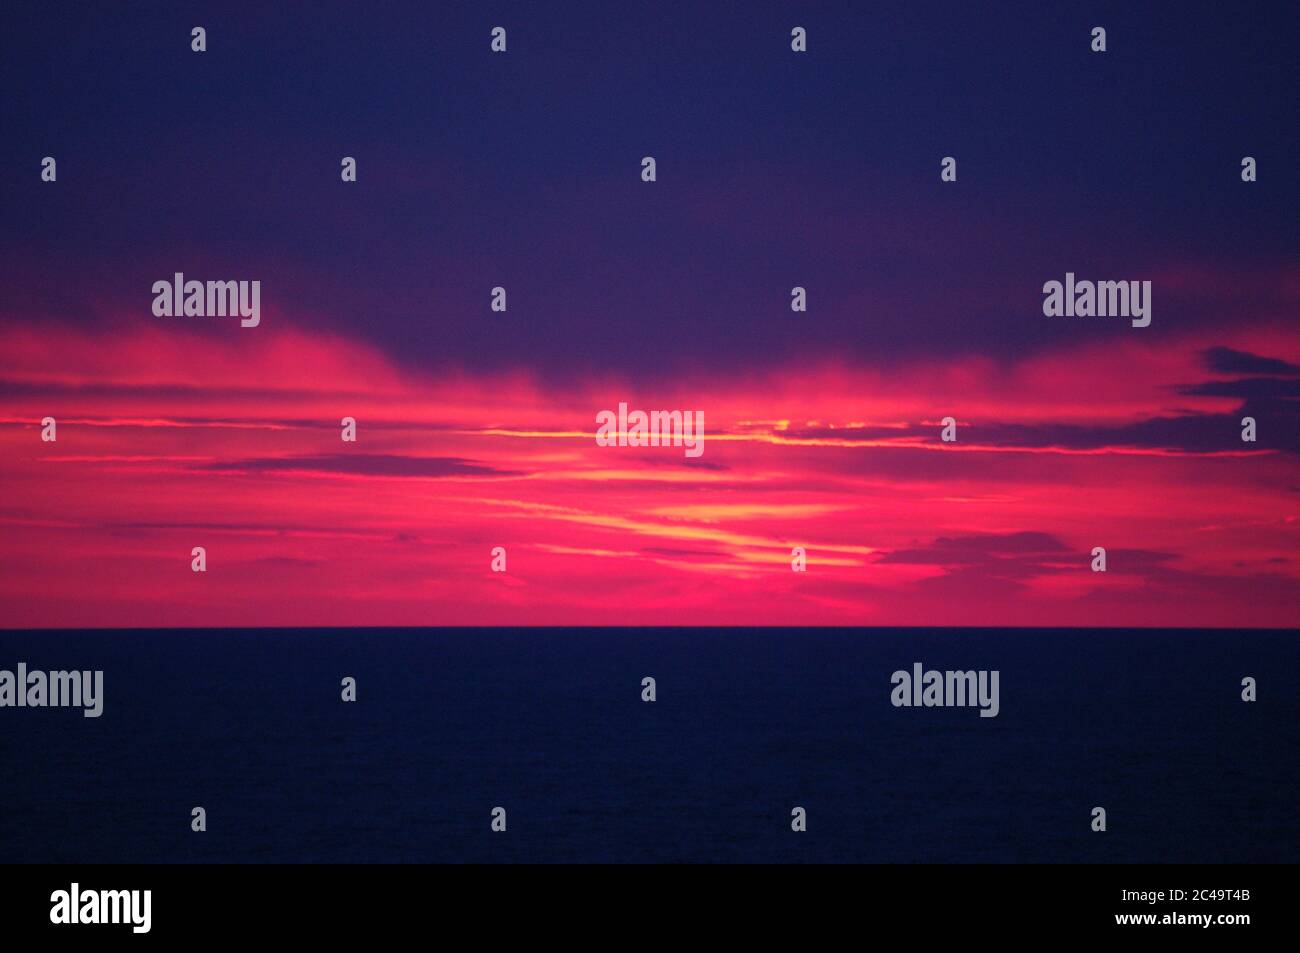 Séquence d'images d'un coucher de soleil, séquence d'images d'un coucher de soleil sur la mer, série d'images de coucher de soleil cramoisi sur la mer, coucher de soleil cramoisi sur le Clo pourpre de mer Banque D'Images